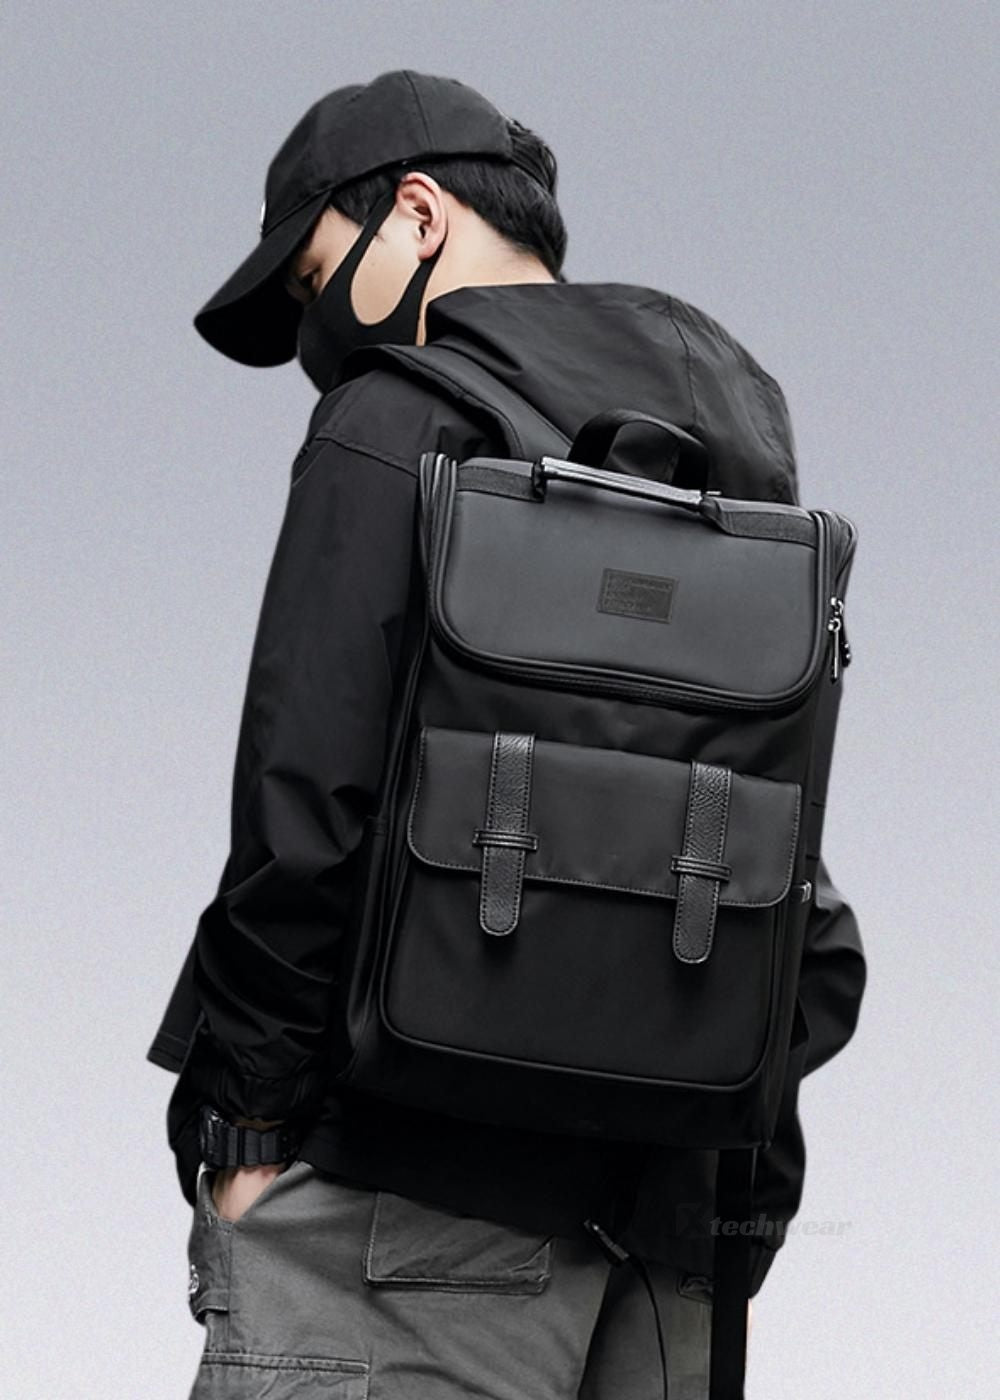 Travel Techwear Backpack - Shop #1 Techwear Bags - X